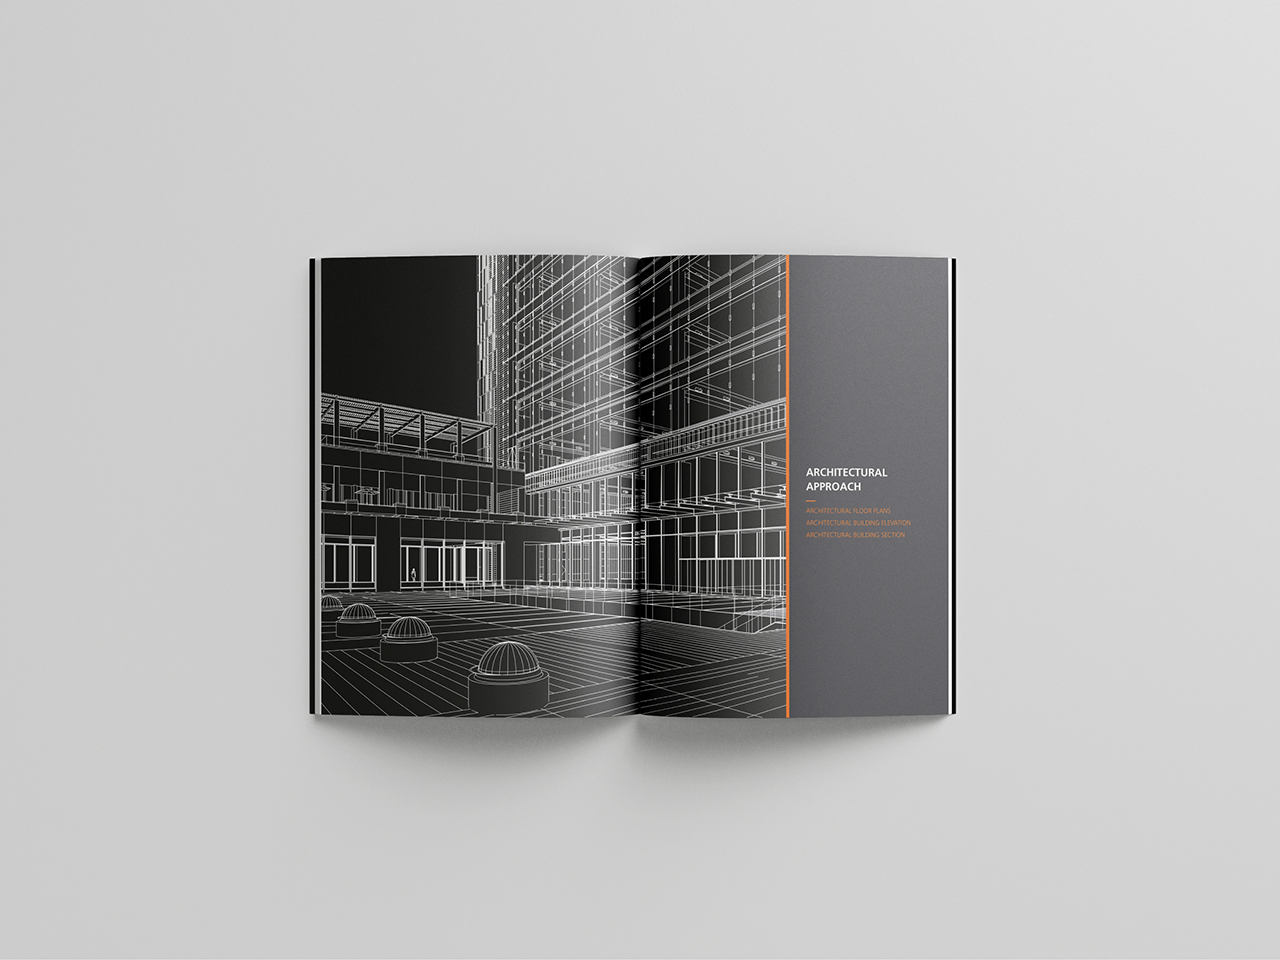 国际建筑品牌 设计竞赛项目宣传册设计图6